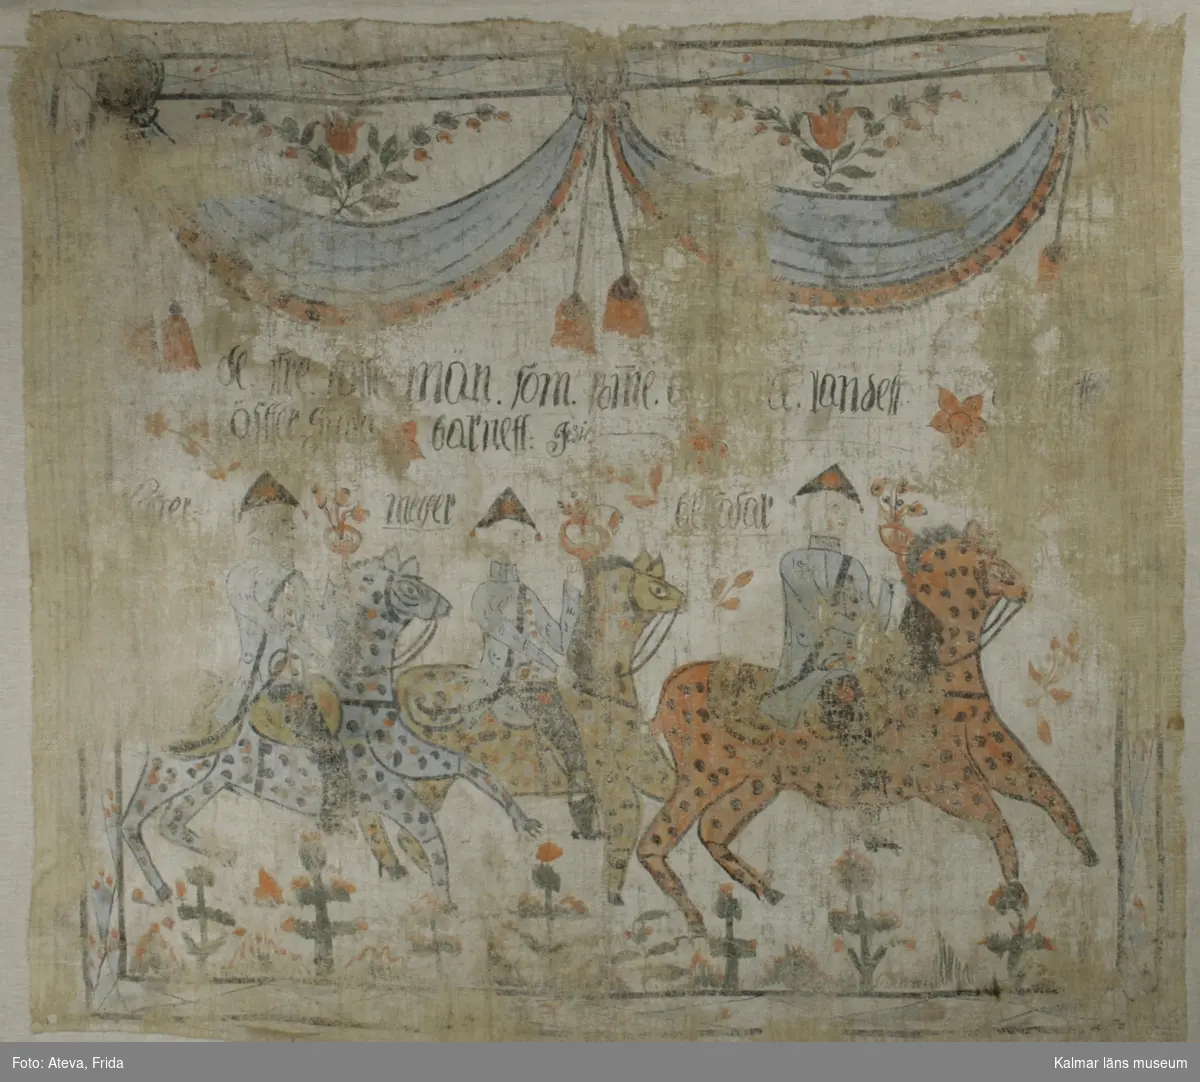 KLM 9132. Bonad av väv. Fäst på stödväv. Målat motiv med de tre vise männen till häst. Vänstra hästen i blått med svarta och röda prickar. Hästen i mitten är gul med svarta, blåa och röda prickar. Hästen till höger i rött med svarta prickar. Vid de tre vise männen står deras namn skrivet i svart, troligen Kaspar, Melker och Baltasar. Över deras huvuden text: de tre vise män som (?)orne .. landet äffter Gud(?) barnett. Överst draperi i blått och rött med röda tofsar. Även blomsterslingor. Runt om bård med geometriskt mönster i blått och rött.